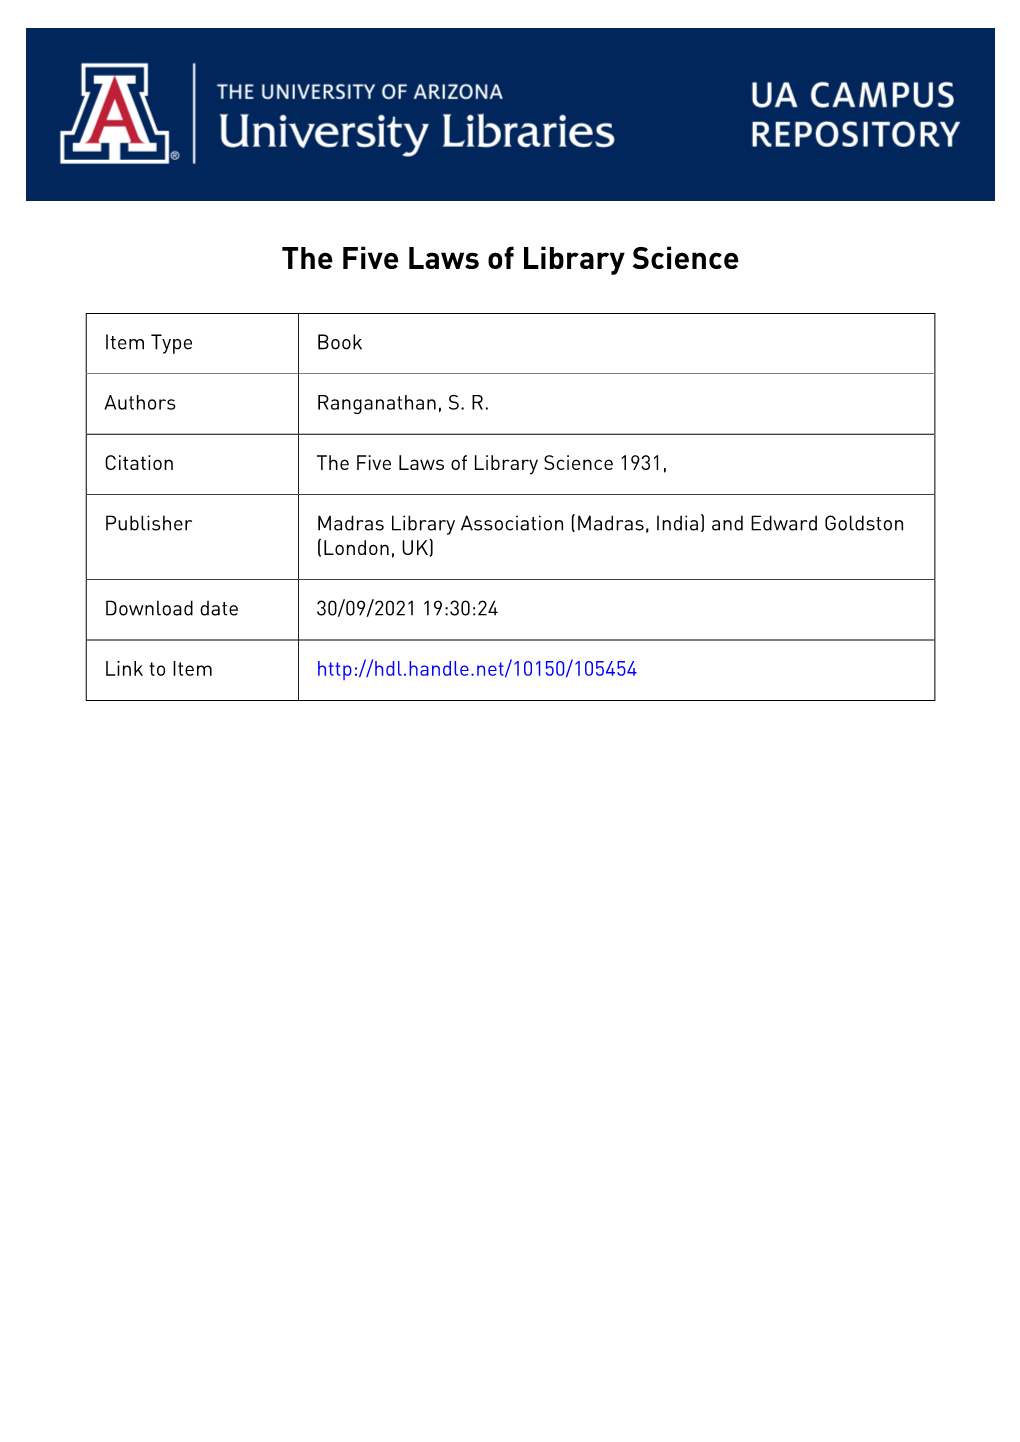 Ranganathan, Shiyali Ramamrita. the Five Laws of Library Science